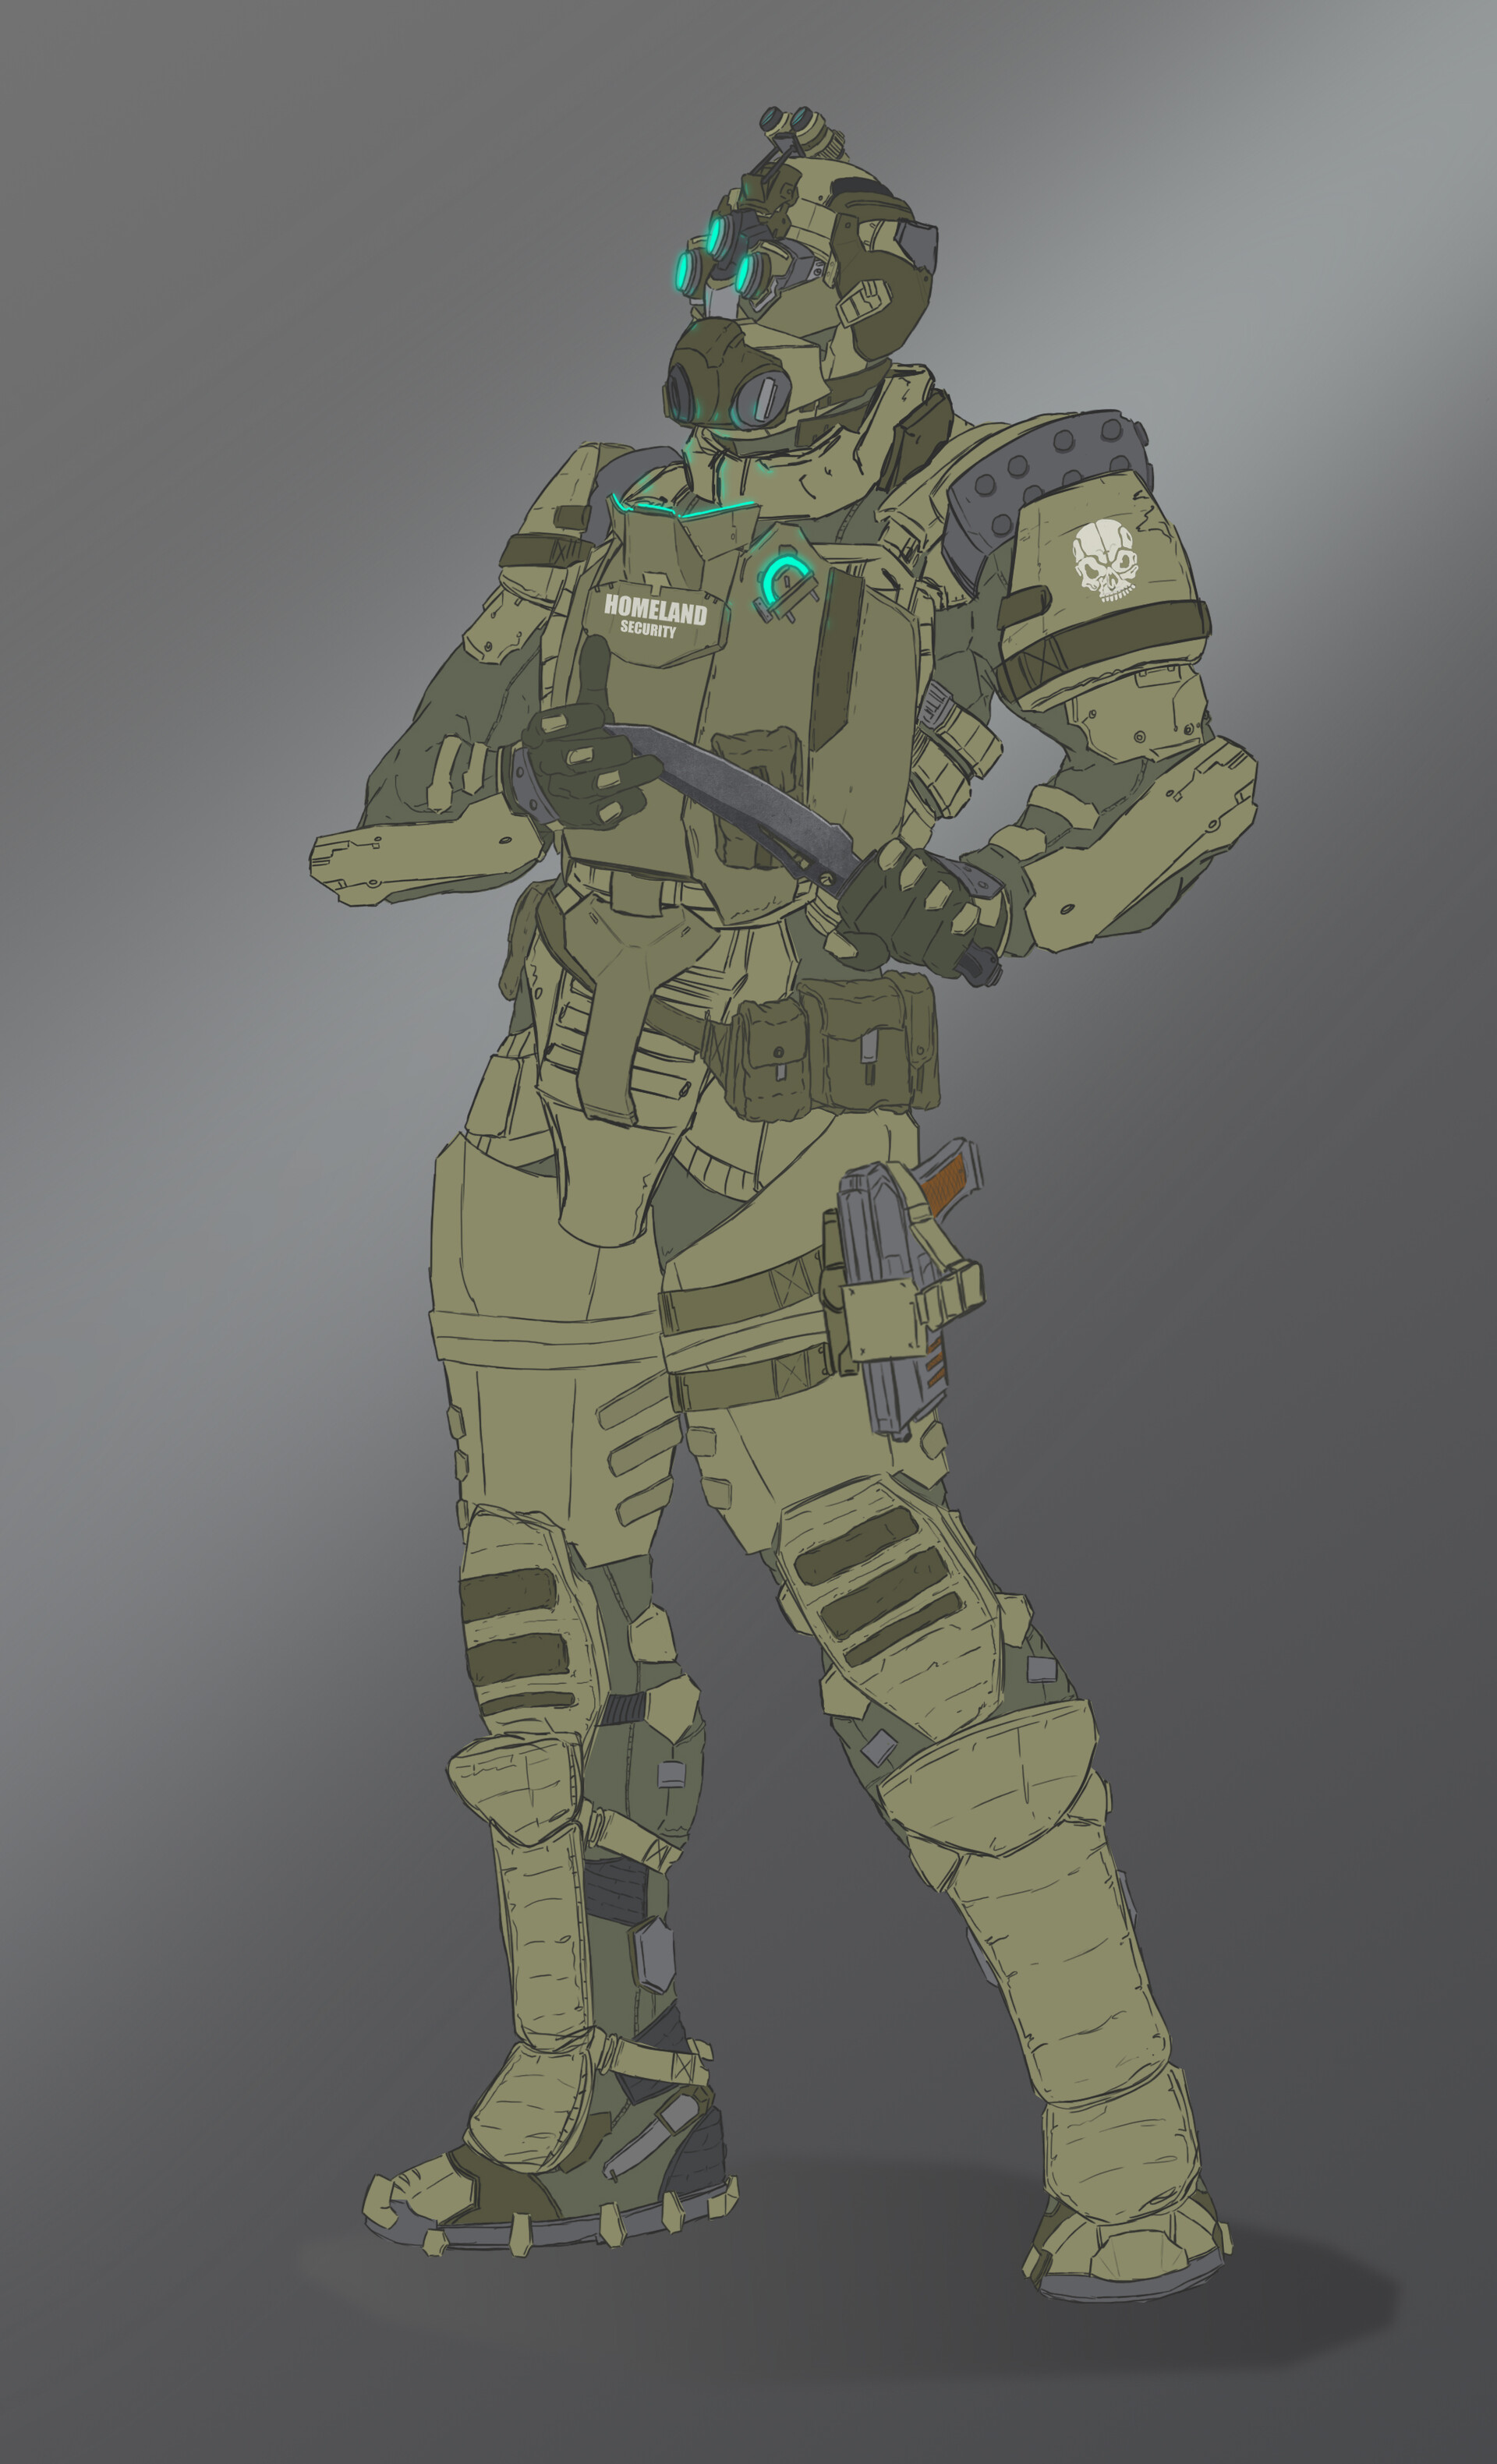 ArtStation - Army combat suit - concept